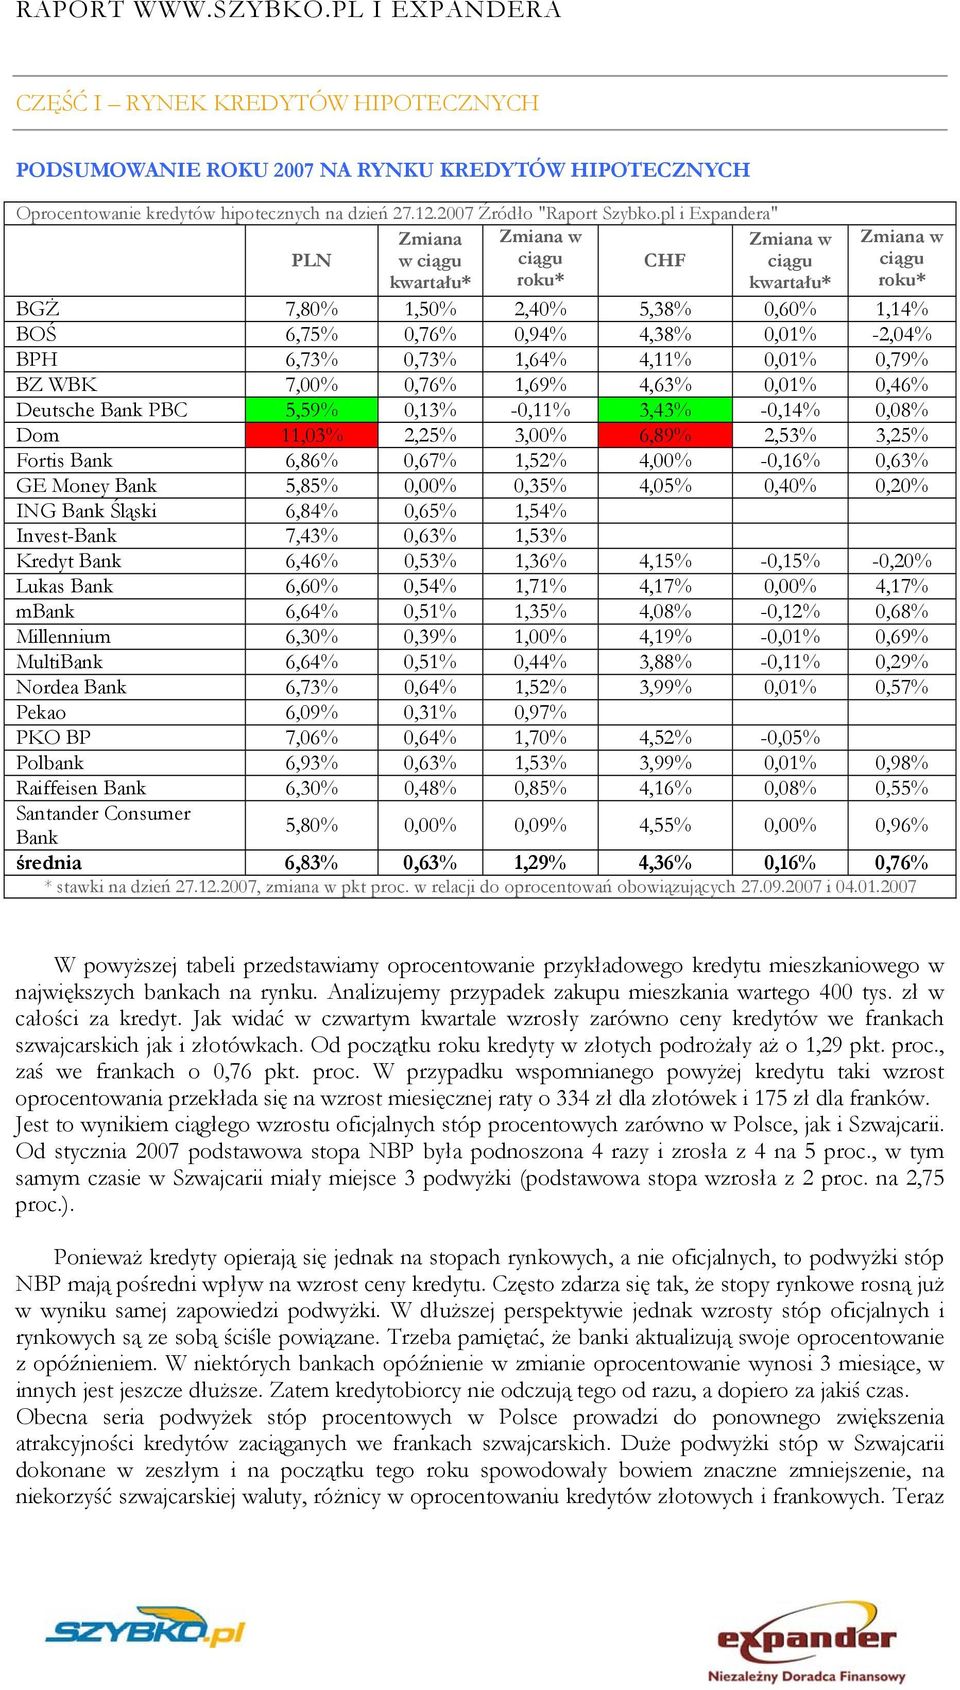 BPH 6,73% 0,73% 1,64% 4,11% 0,01% 0,79% BZ WBK 7,00% 0,76% 1,69% 4,63% 0,01% 0,46% Deutsche Bank PBC 5,59% 0,13% -0,11% 3,43% -0,14% 0,08% Dom 11,03% 2,25% 3,00% 6,89% 2,53% 3,25% Fortis Bank 6,86%